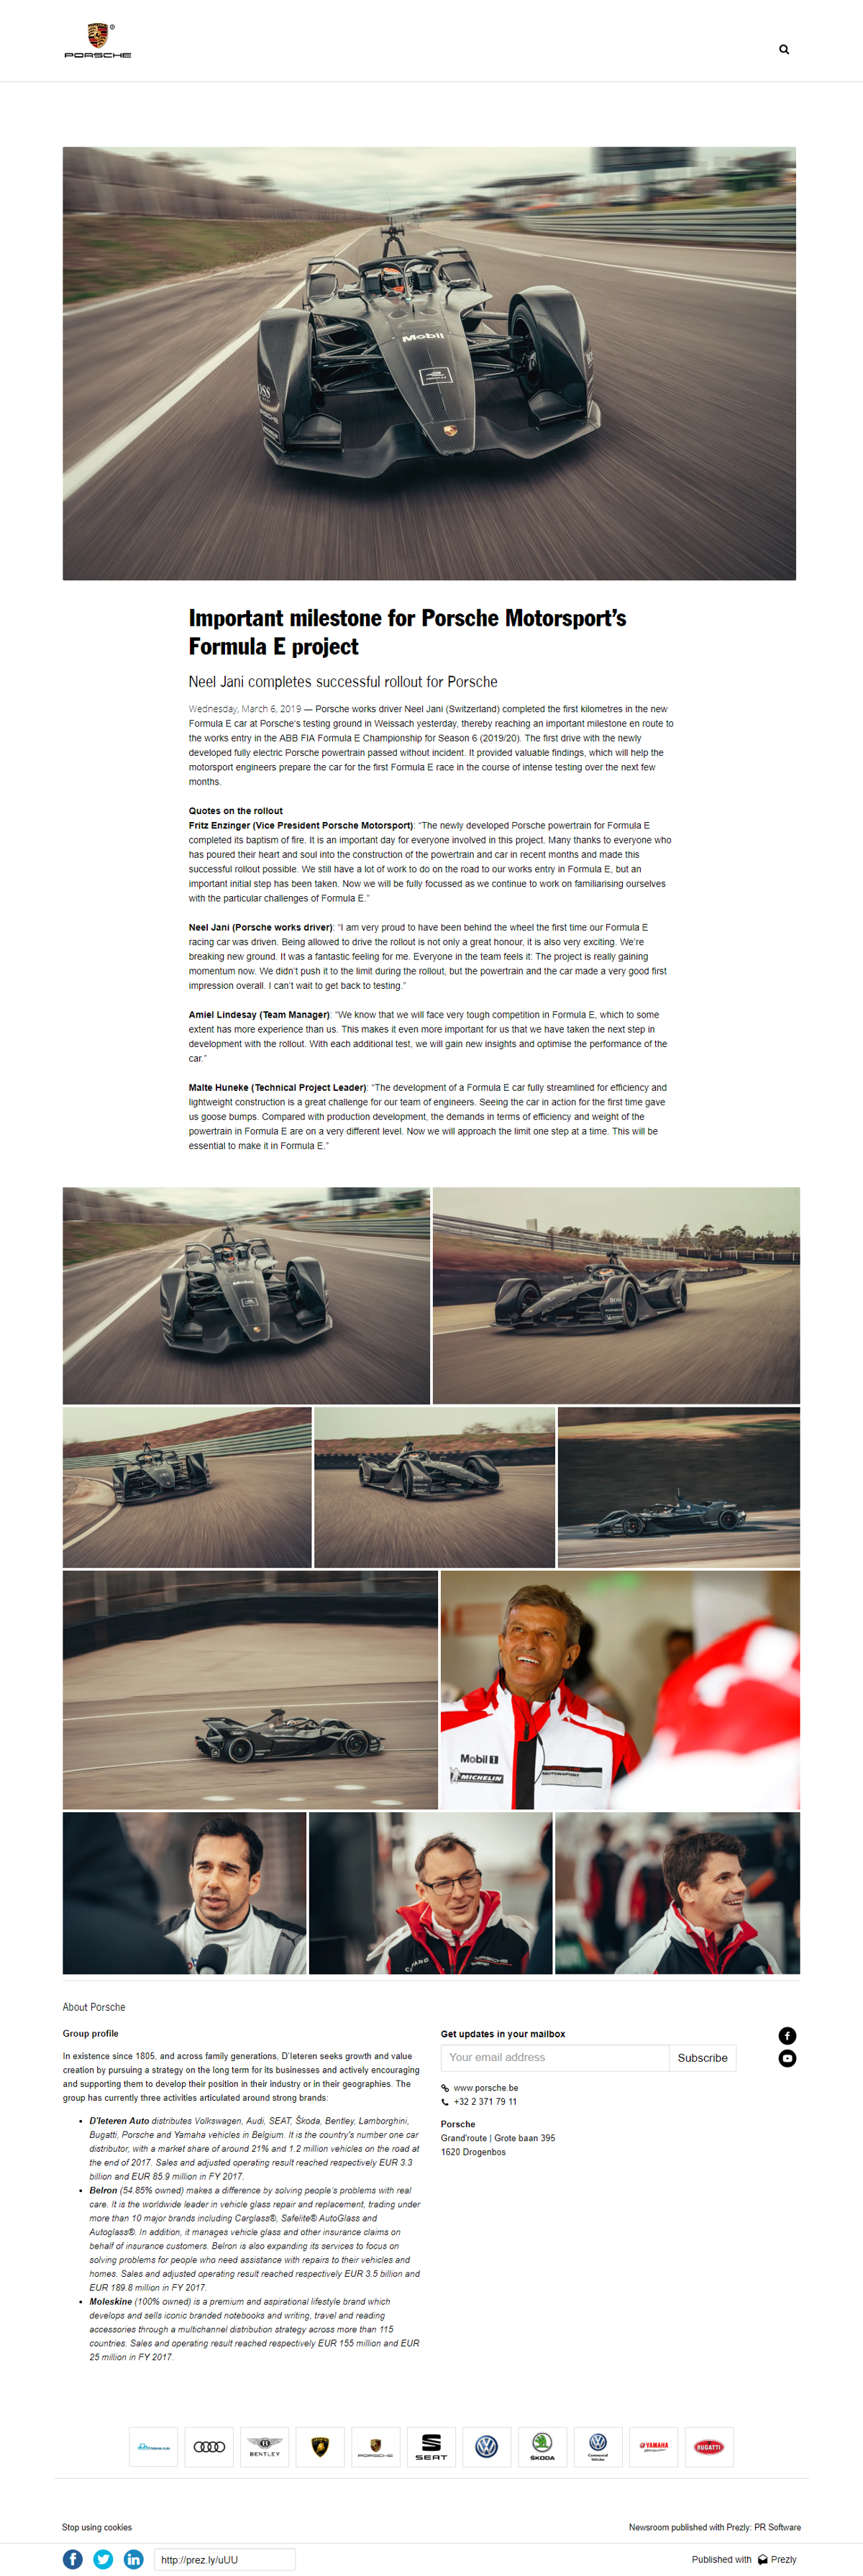 Important milestone for Porsche Motorsport’s Formula E project